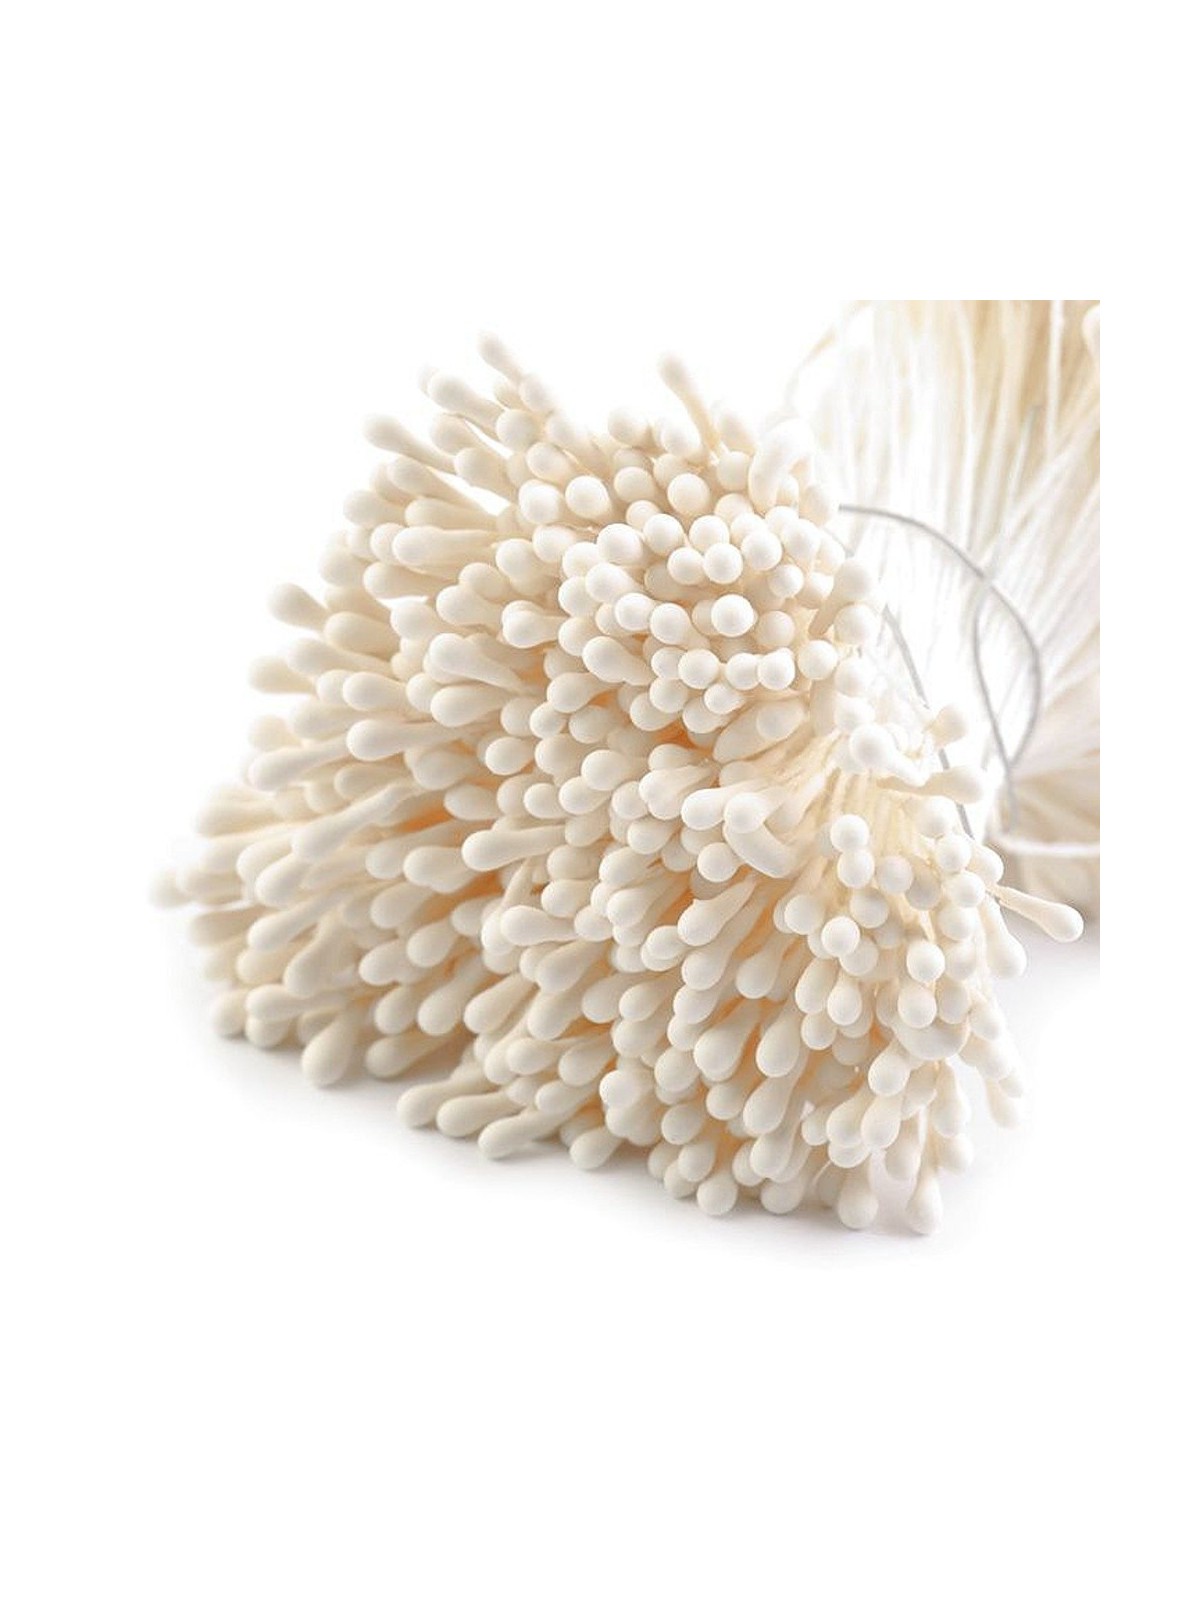 Blütenstempel - Mittelmatt cremig hell - 450 Stk